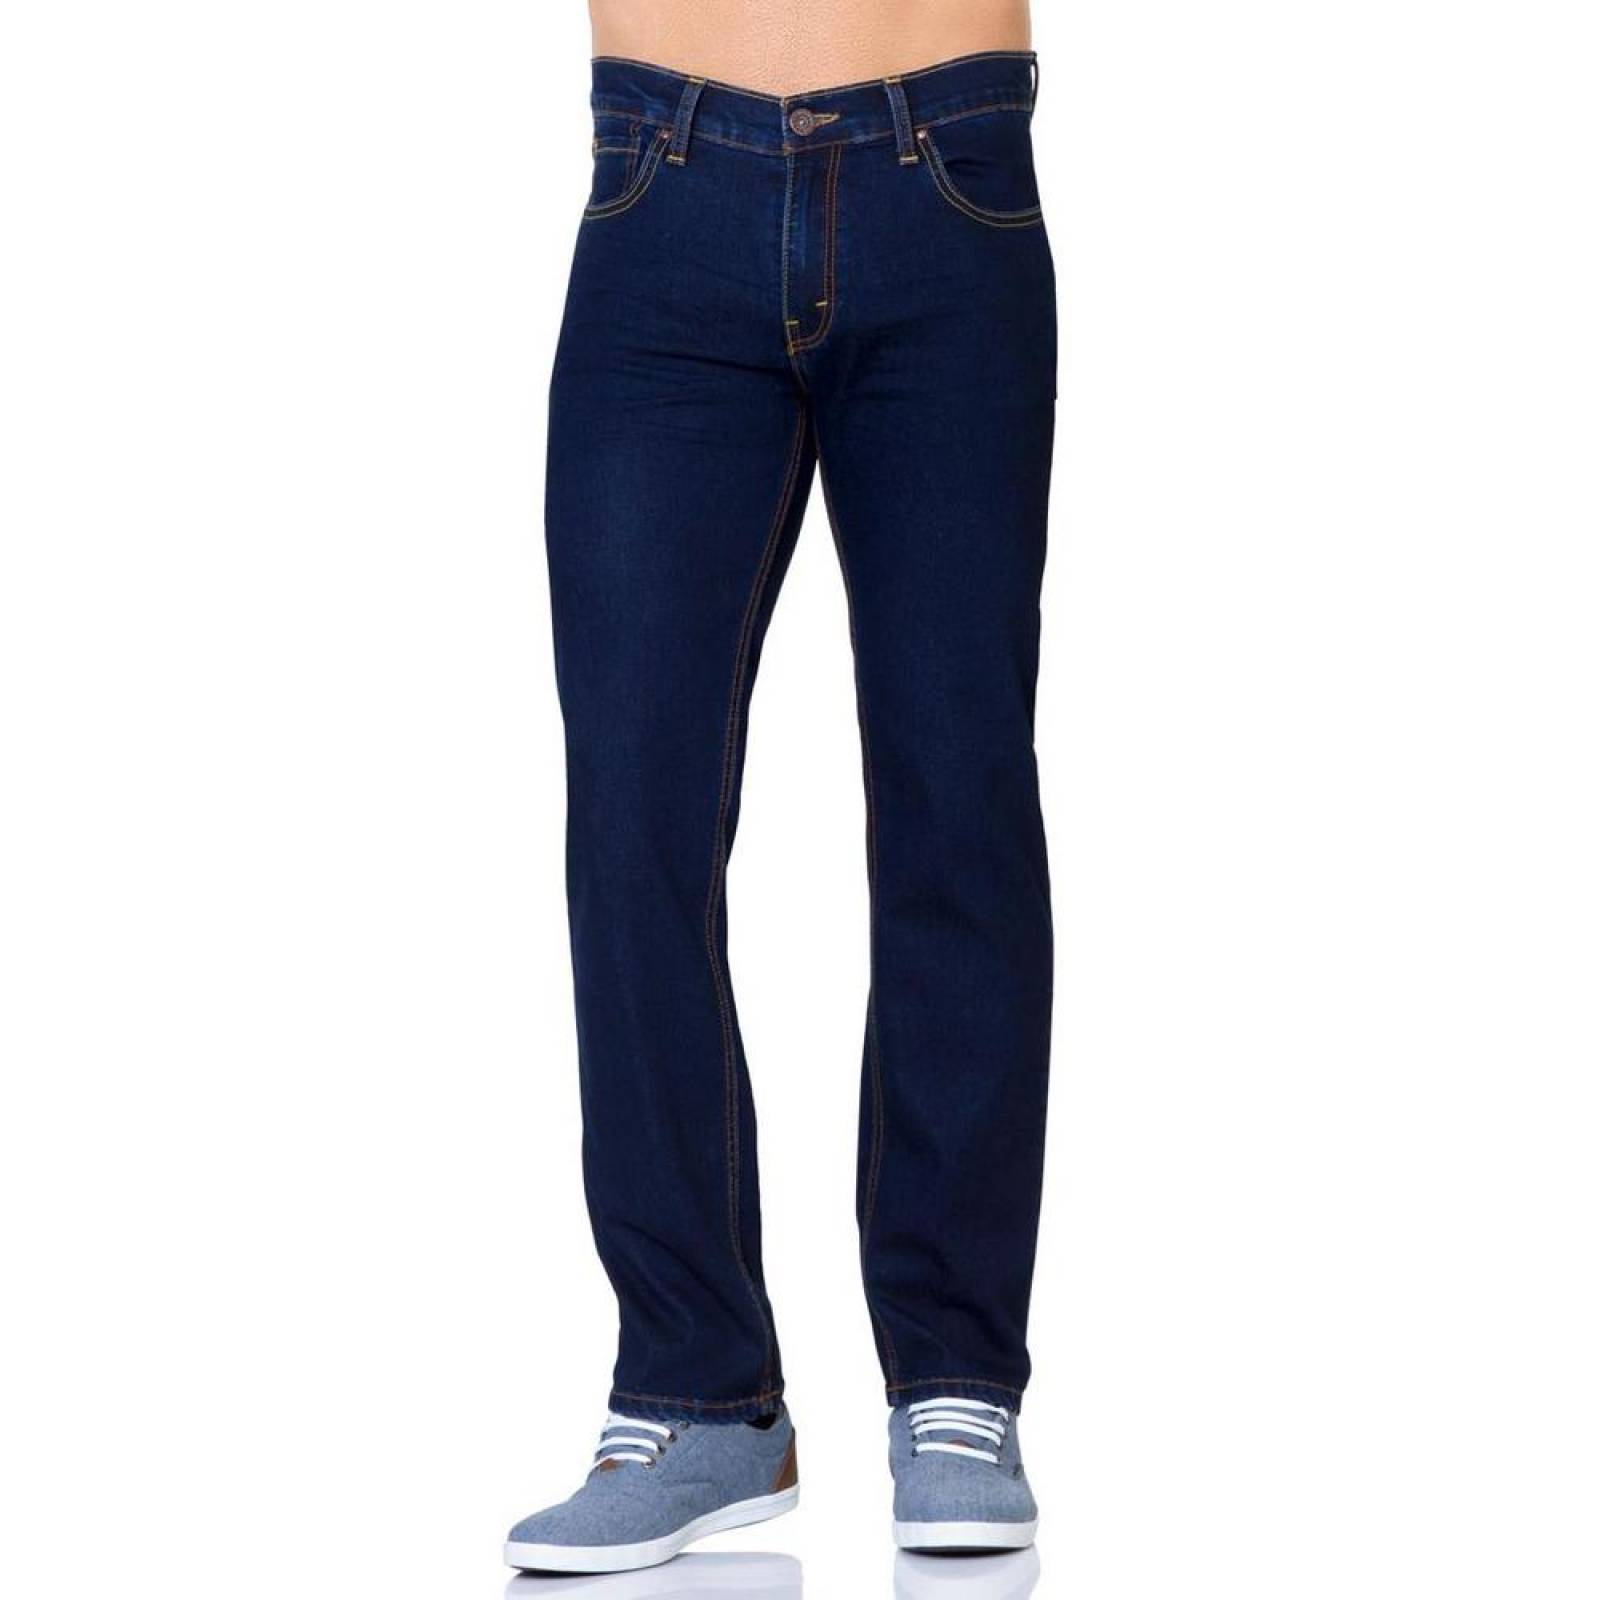 Jeans Básico Hombre Furor Indigo 62105134 Mezclilla Stretch 